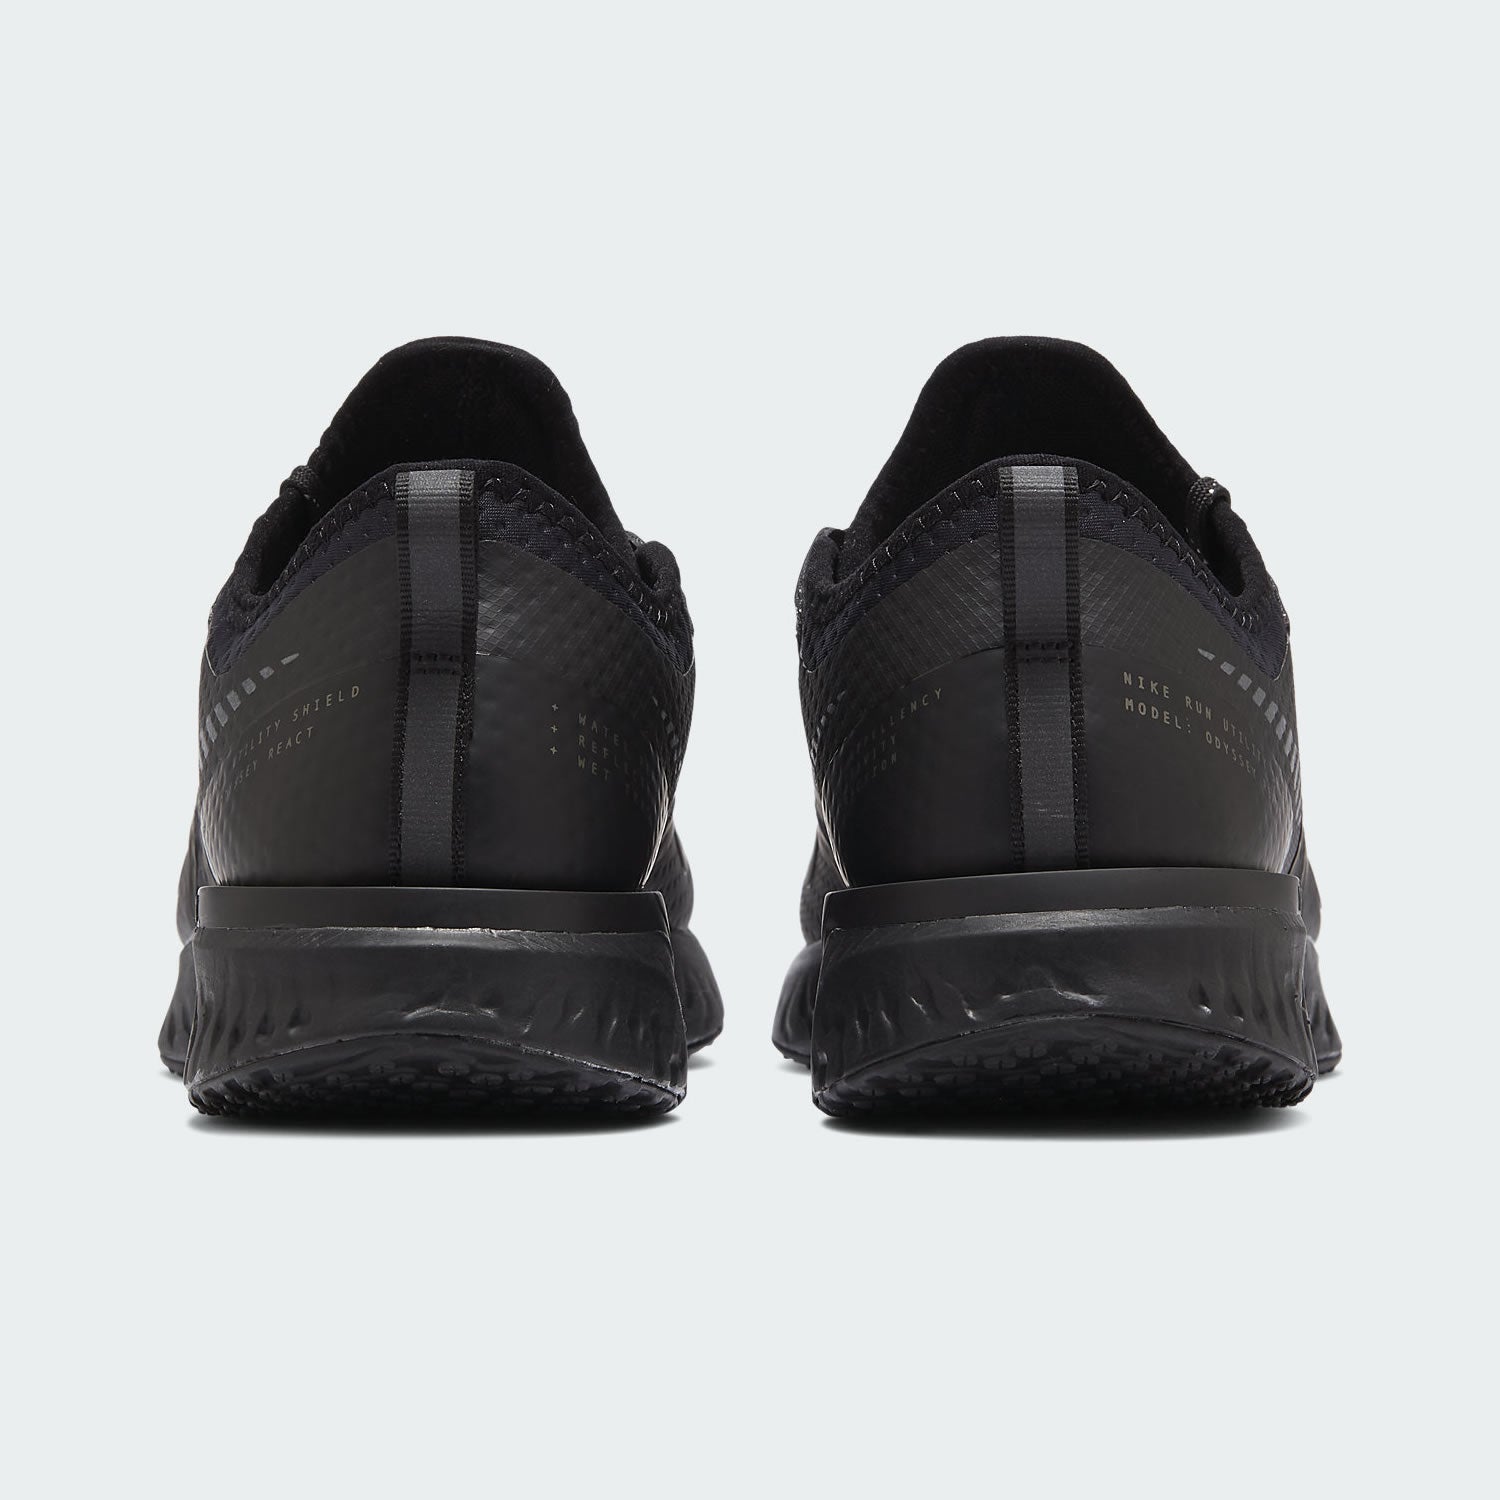 tradesports.co.uk Nike Women's Odyssey React 2 Shield Shoes BQ1672 001